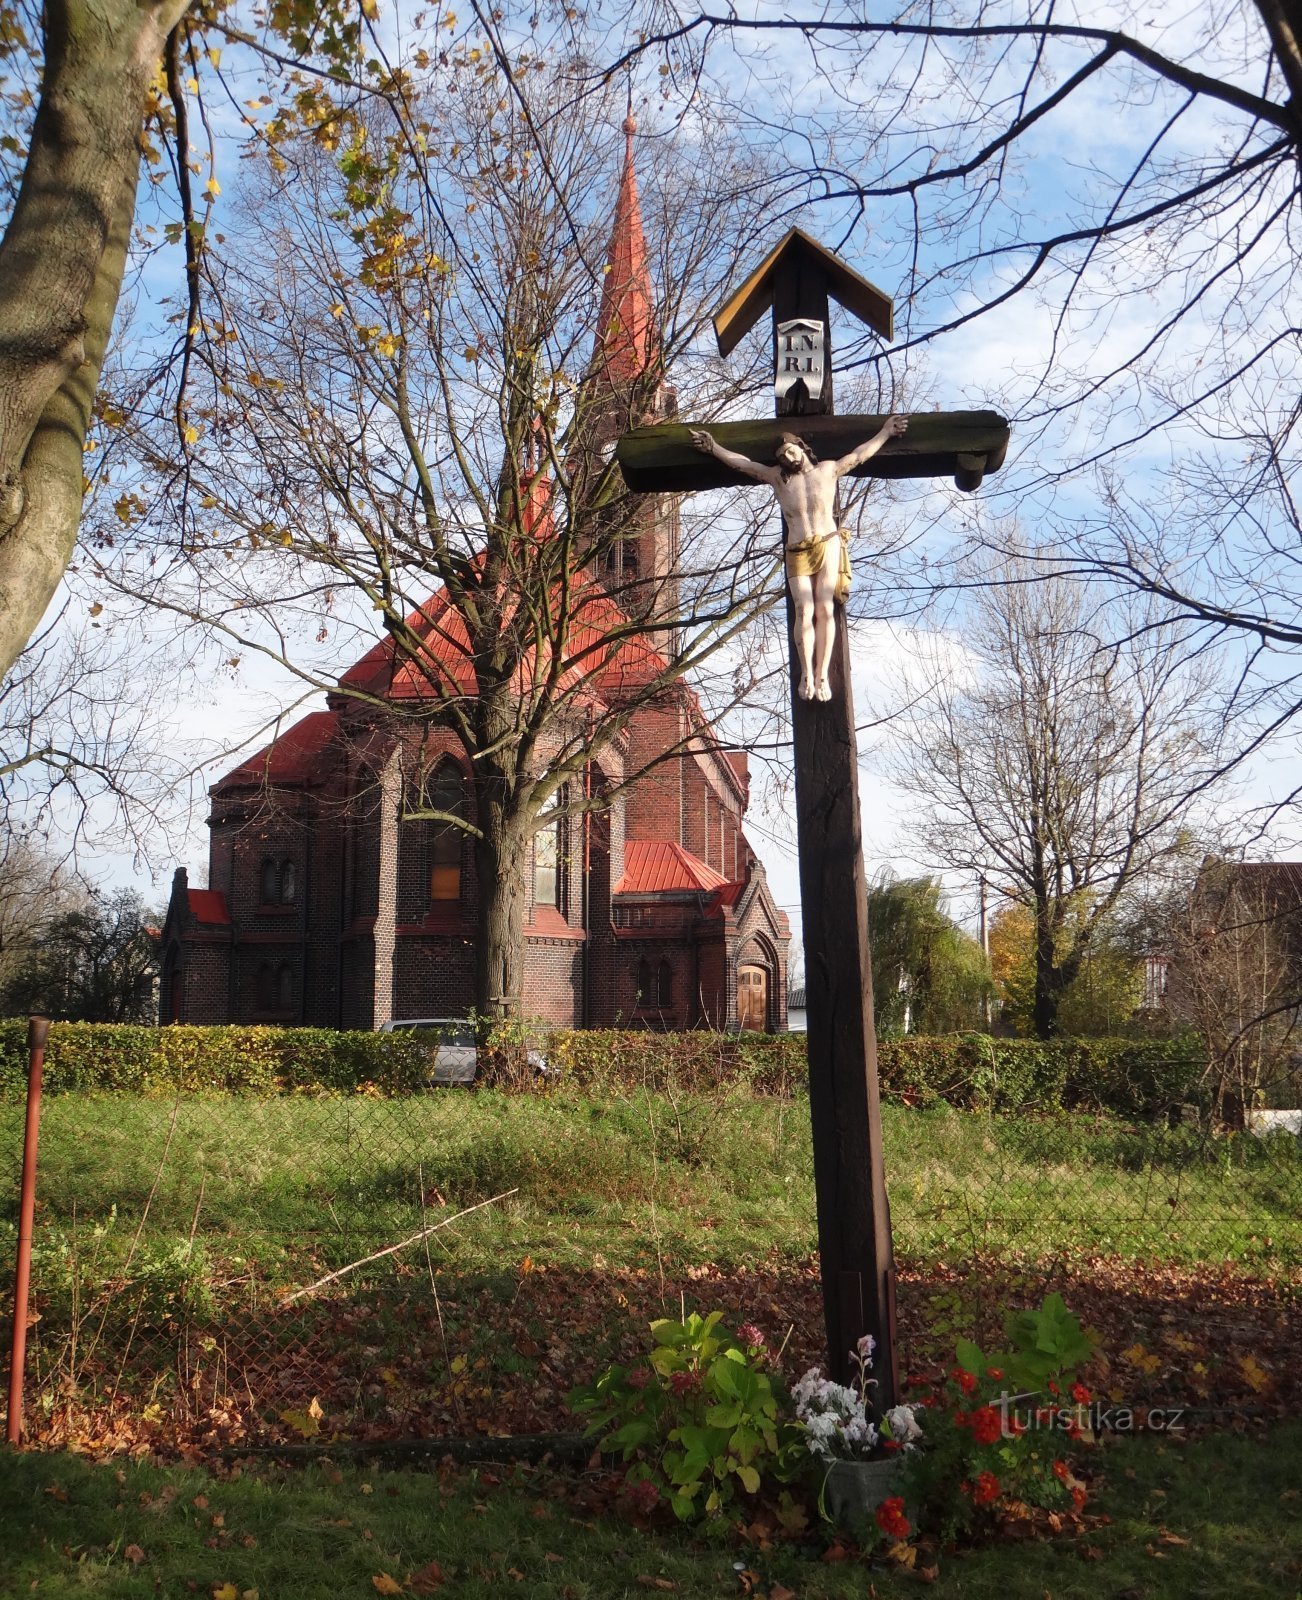 cây thánh giá phía sau nhà thờ, mà P. Bezruč viết về